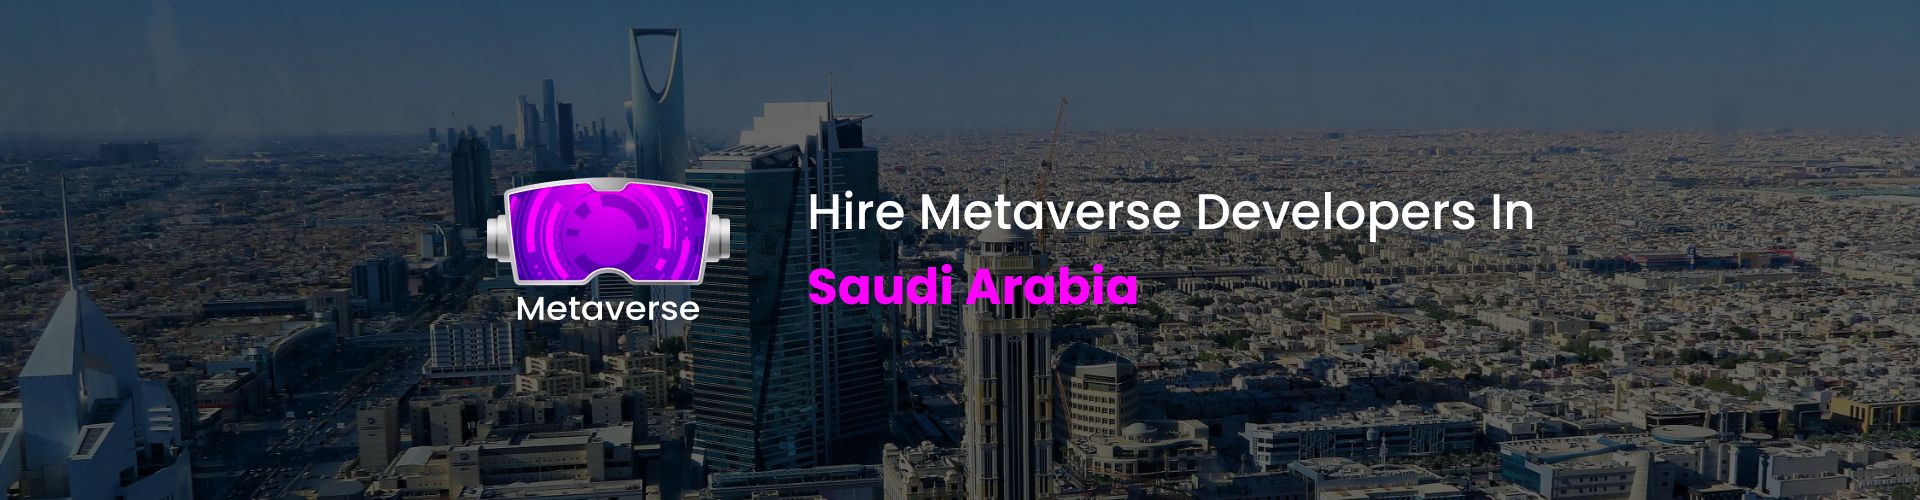 metaverse developers in saudi arabia